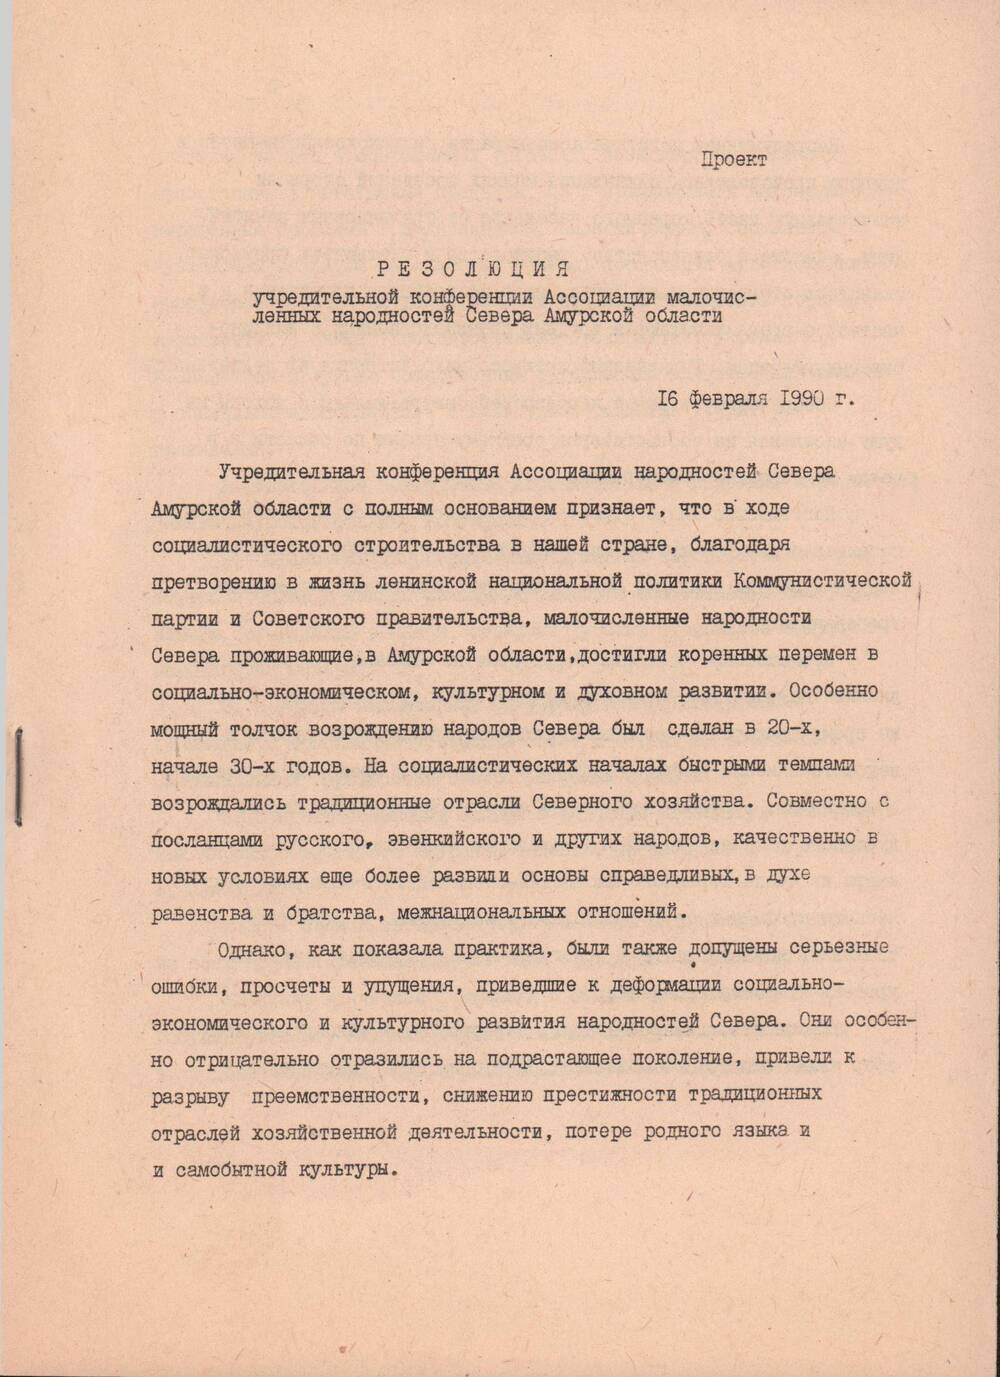 Резолюция учредительной конференции Ассоциации малочисленных народностей Севера Амурской области, 16 февраля 1990 года.